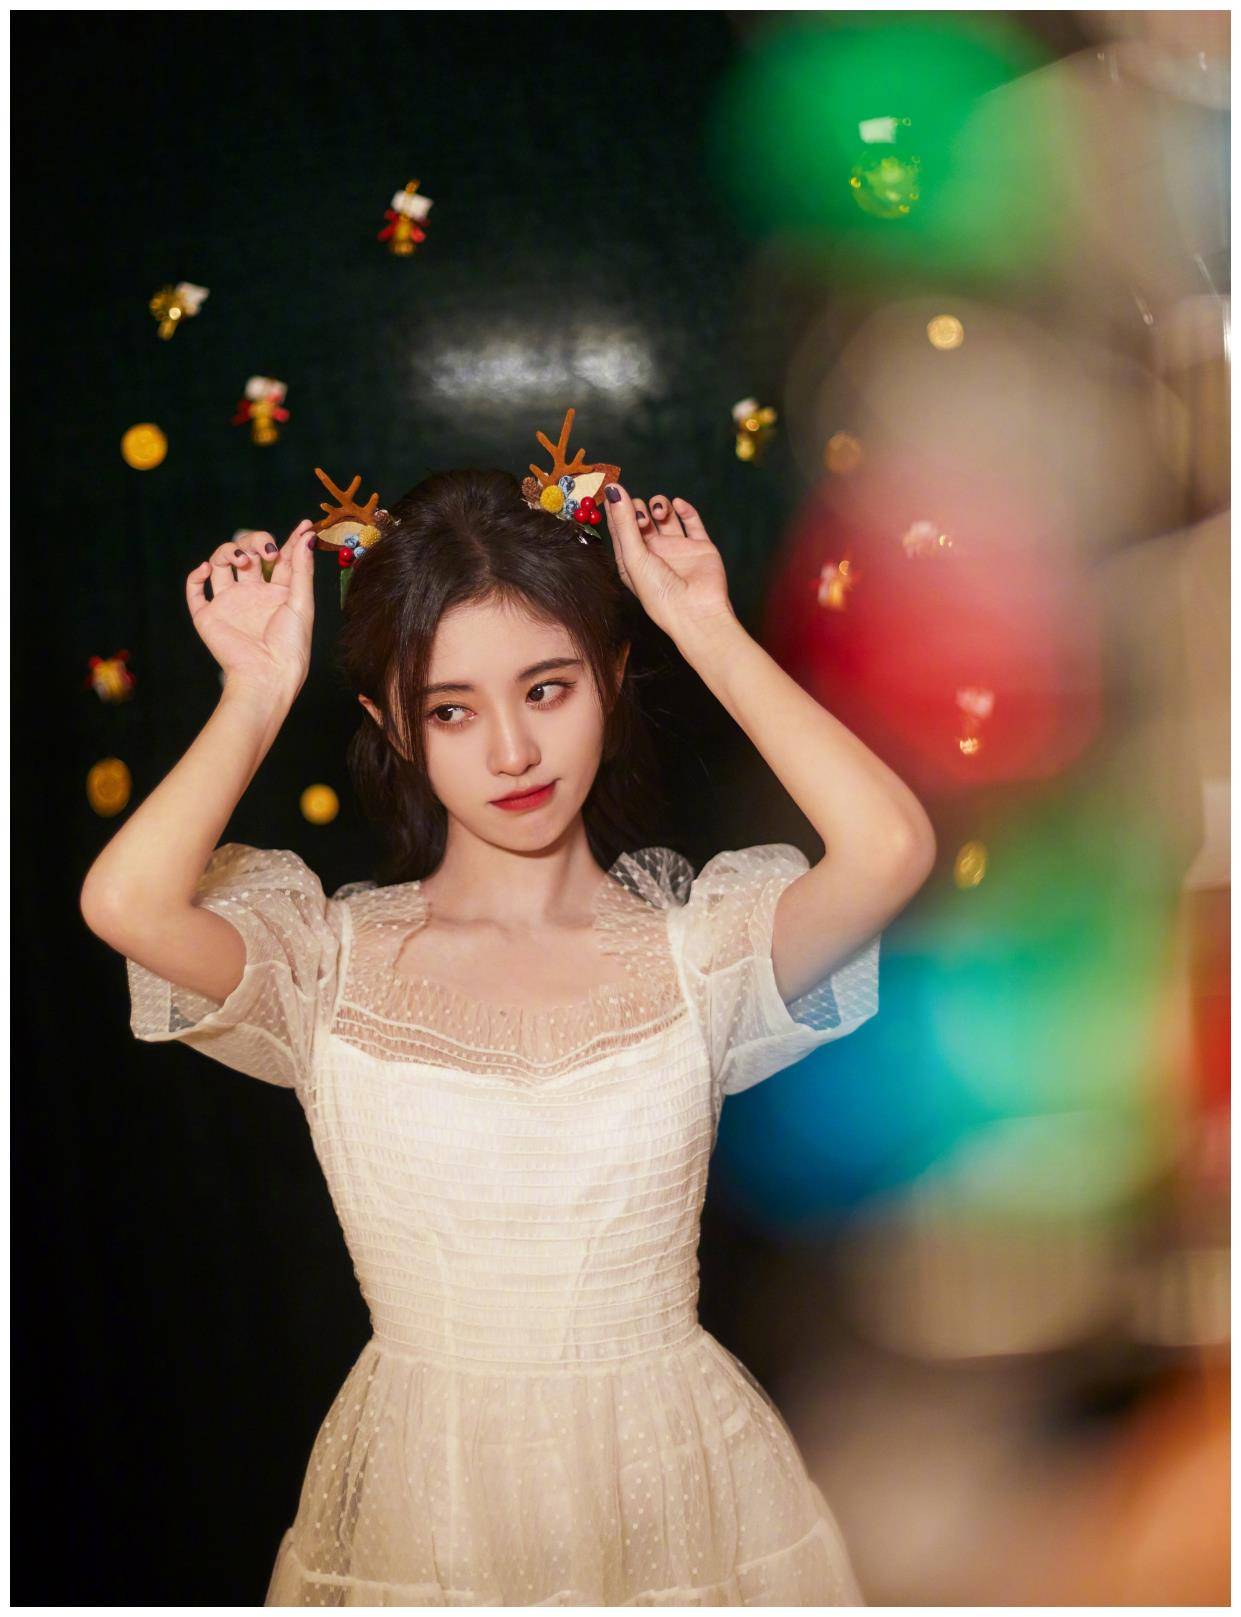 鞠婧祎圣诞造型上线,穿白色薄纱连衣裙,表情可爱又搞怪!